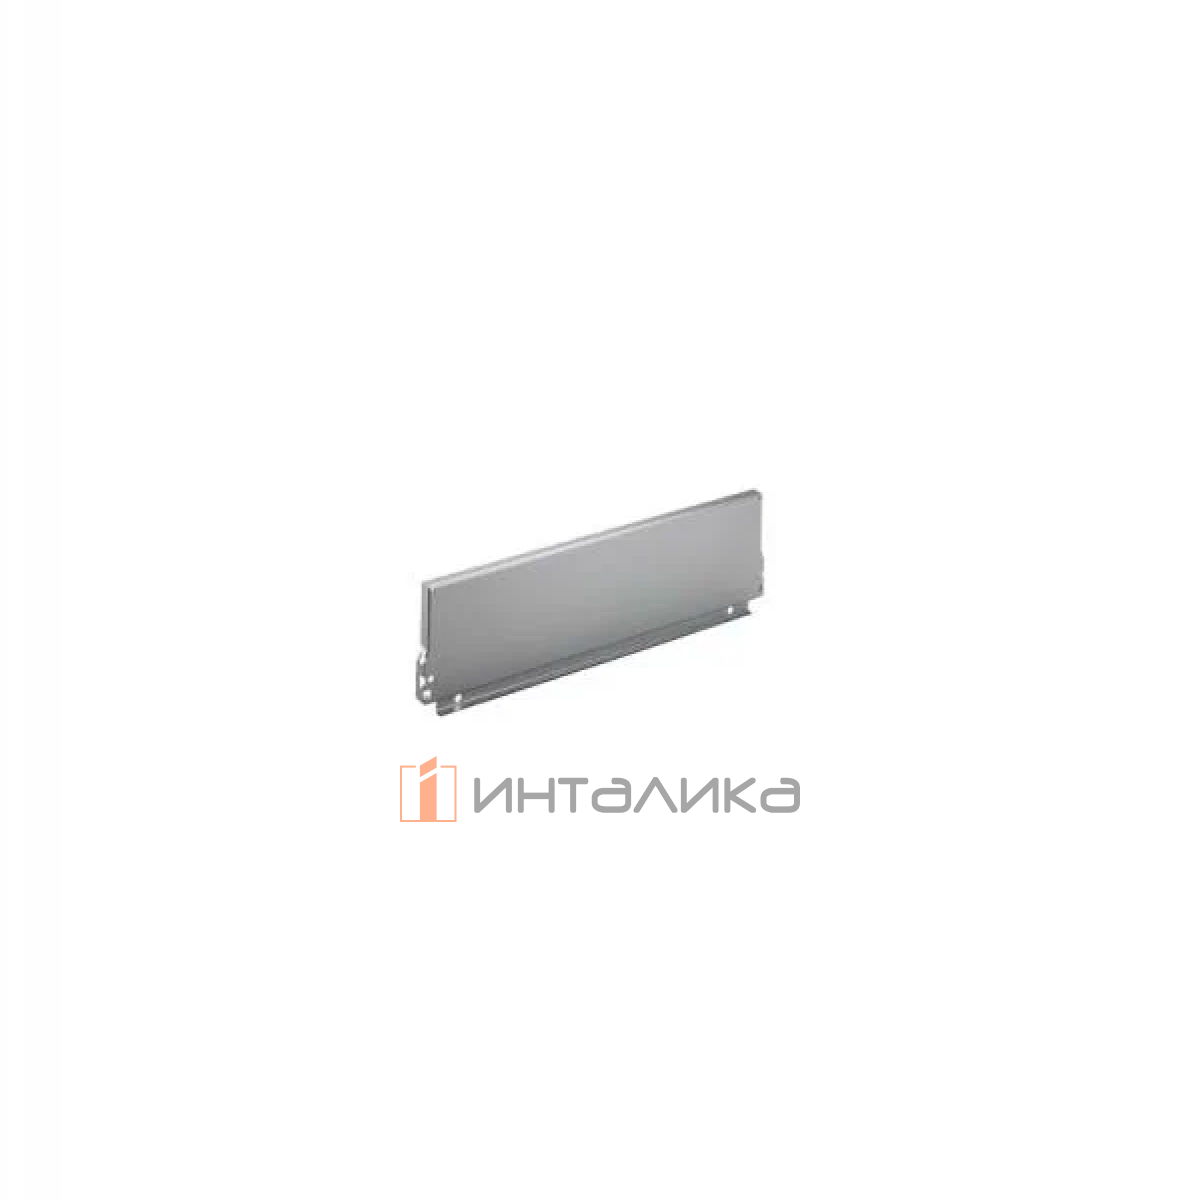 Задняя стенка HETTICH InnoTech/InnoTech Atira, высота 144мм, H300 мм, сталь, цвет серебристый, (V20)